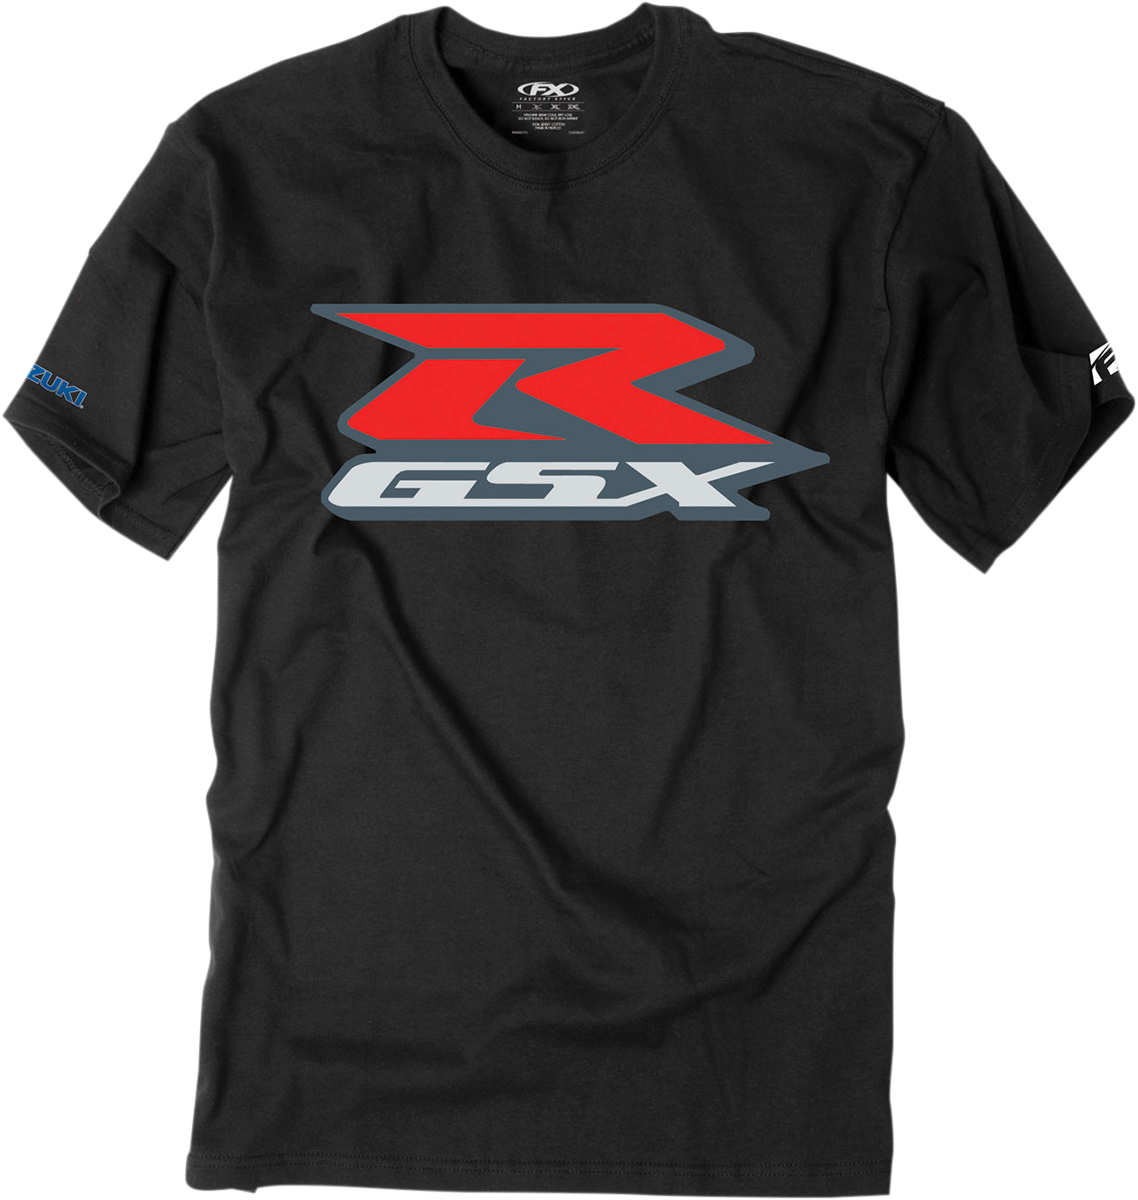 FACTORY EFFEX Suzuki GSXR T-Shirt - Black - XL 15-88484